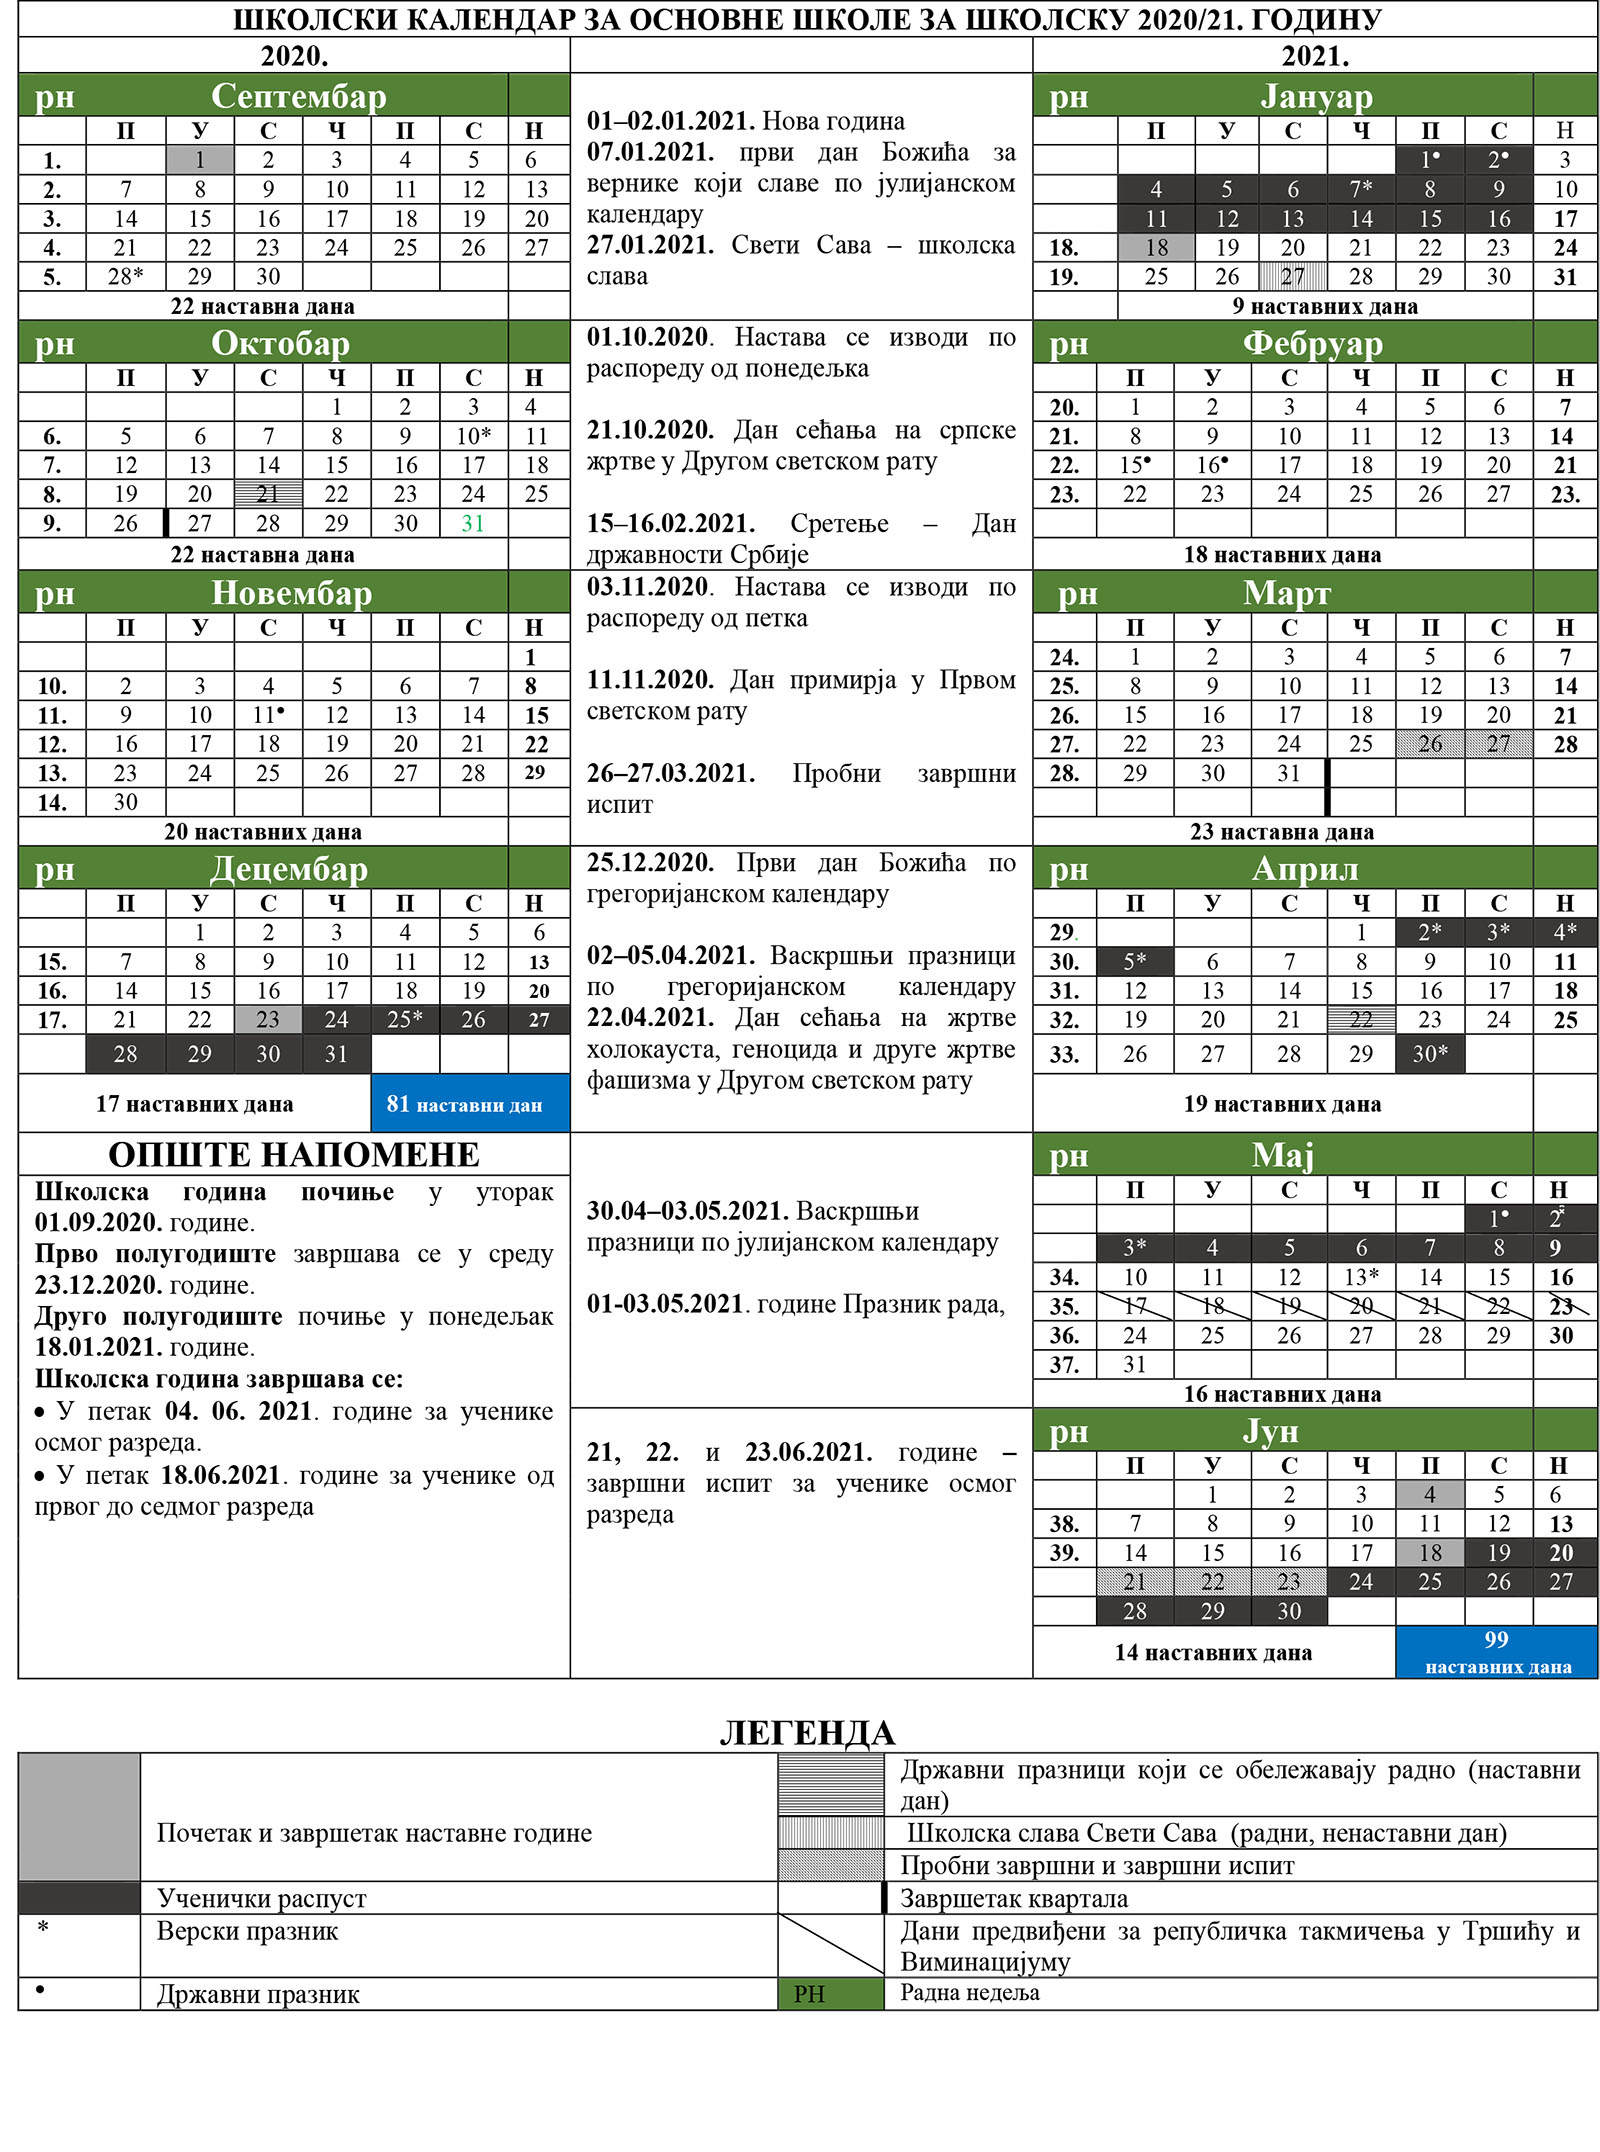 kalendar_tabela_2020_2021.jpg